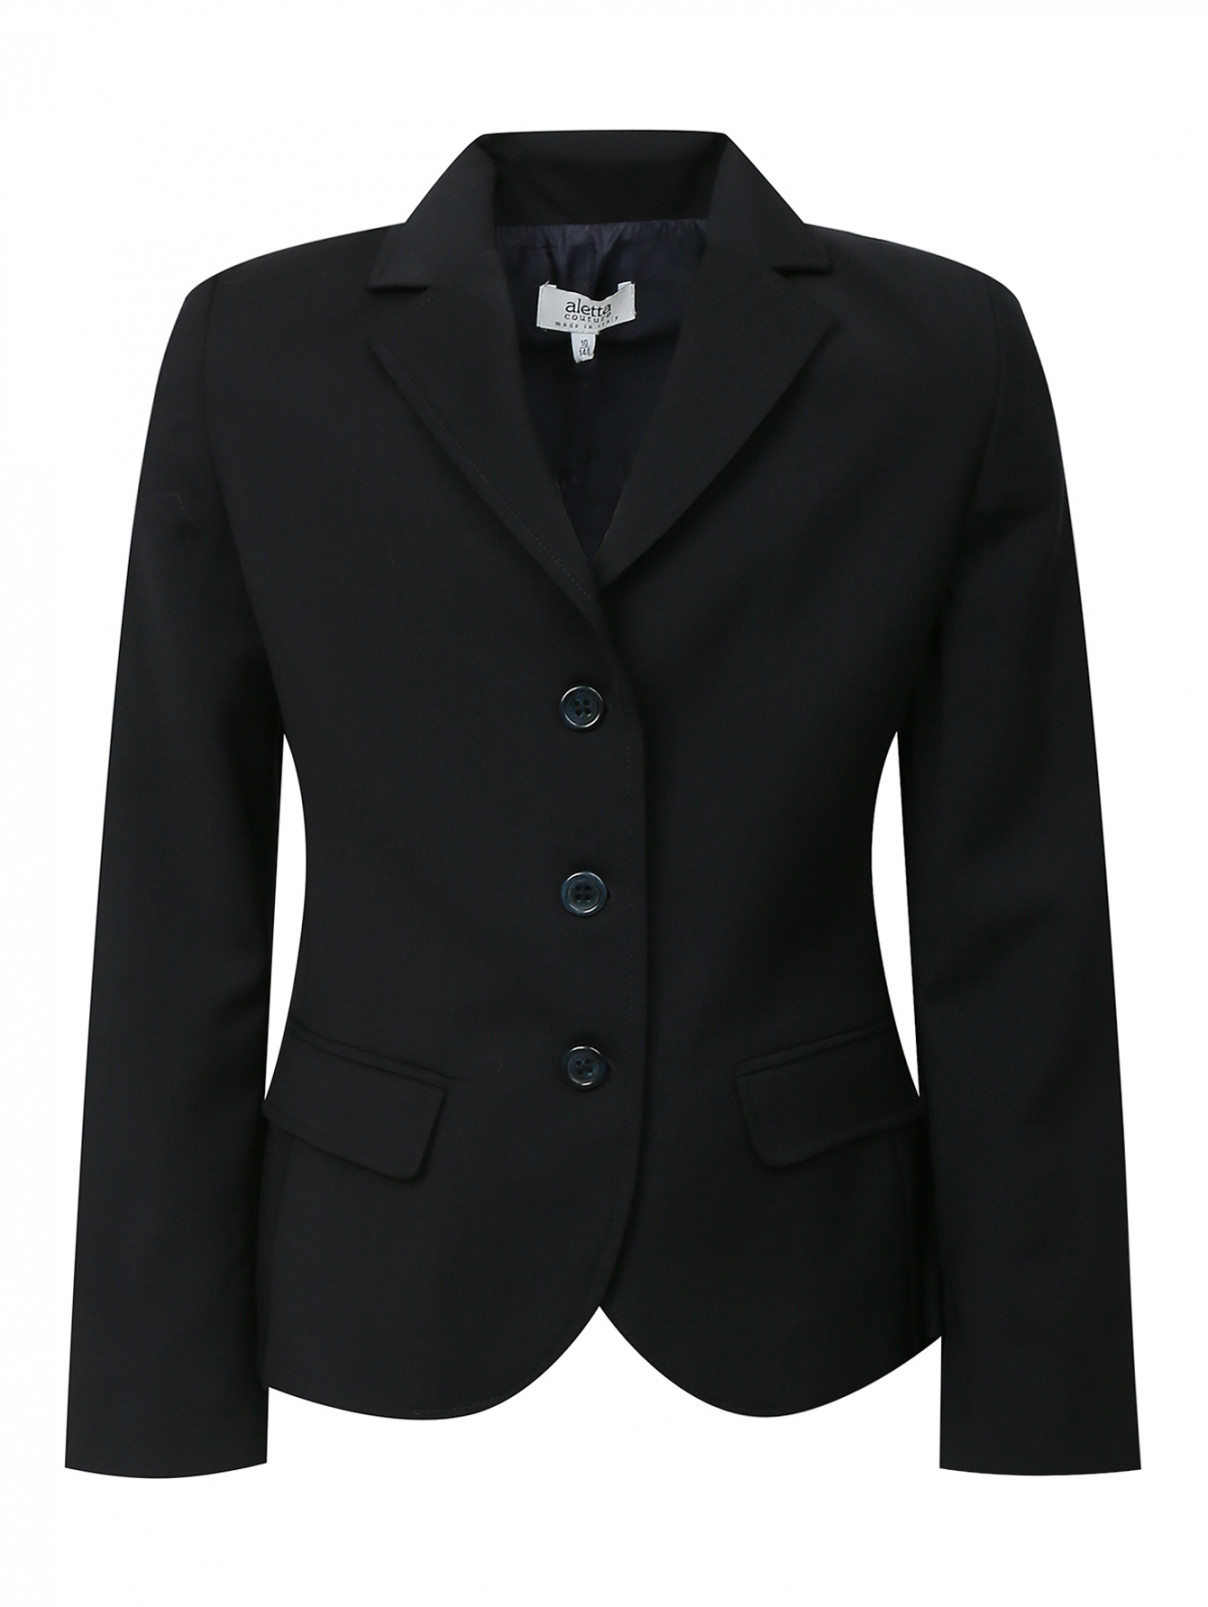 Жакет из шерсти с карманами Aletta Couture  –  Общий вид  – Цвет:  Черный